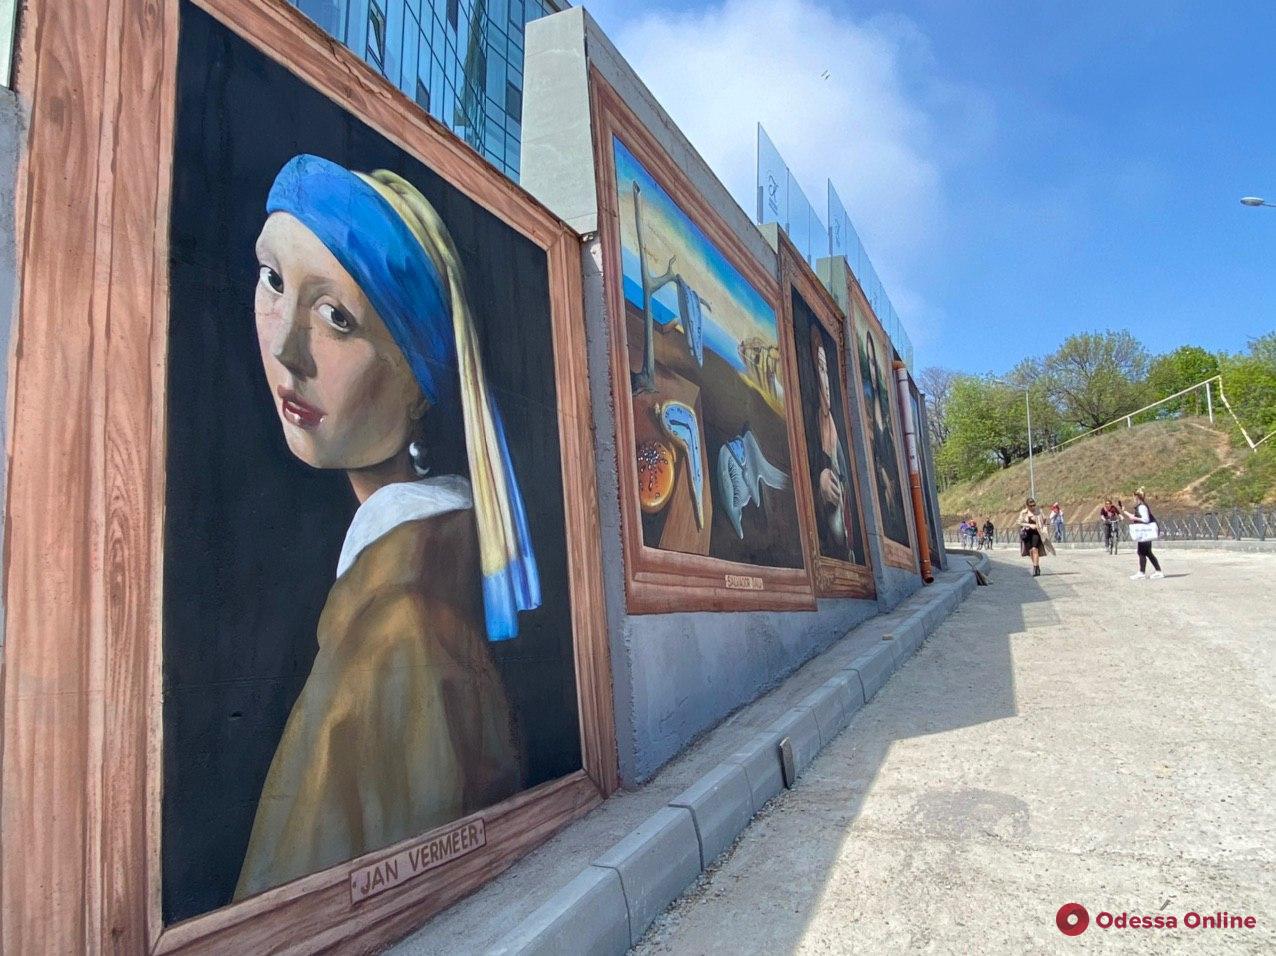 Босх, Пикассо и Дали: одесская картинная галерея под открытым небом почти готова (фото)